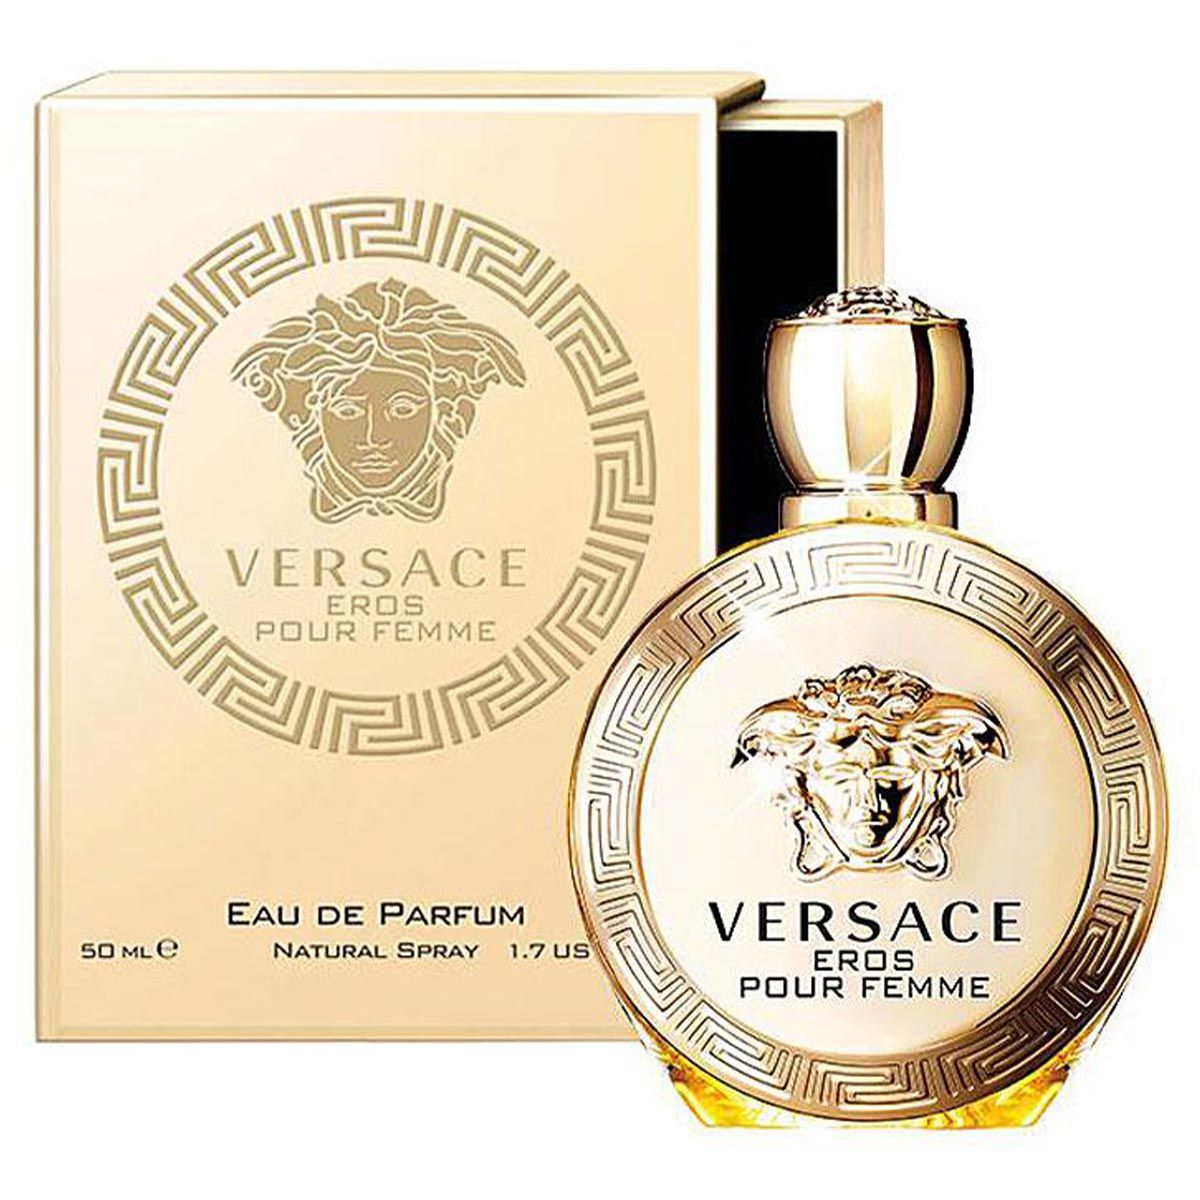  Versace Eros Pour Femme Eau de Parfum 